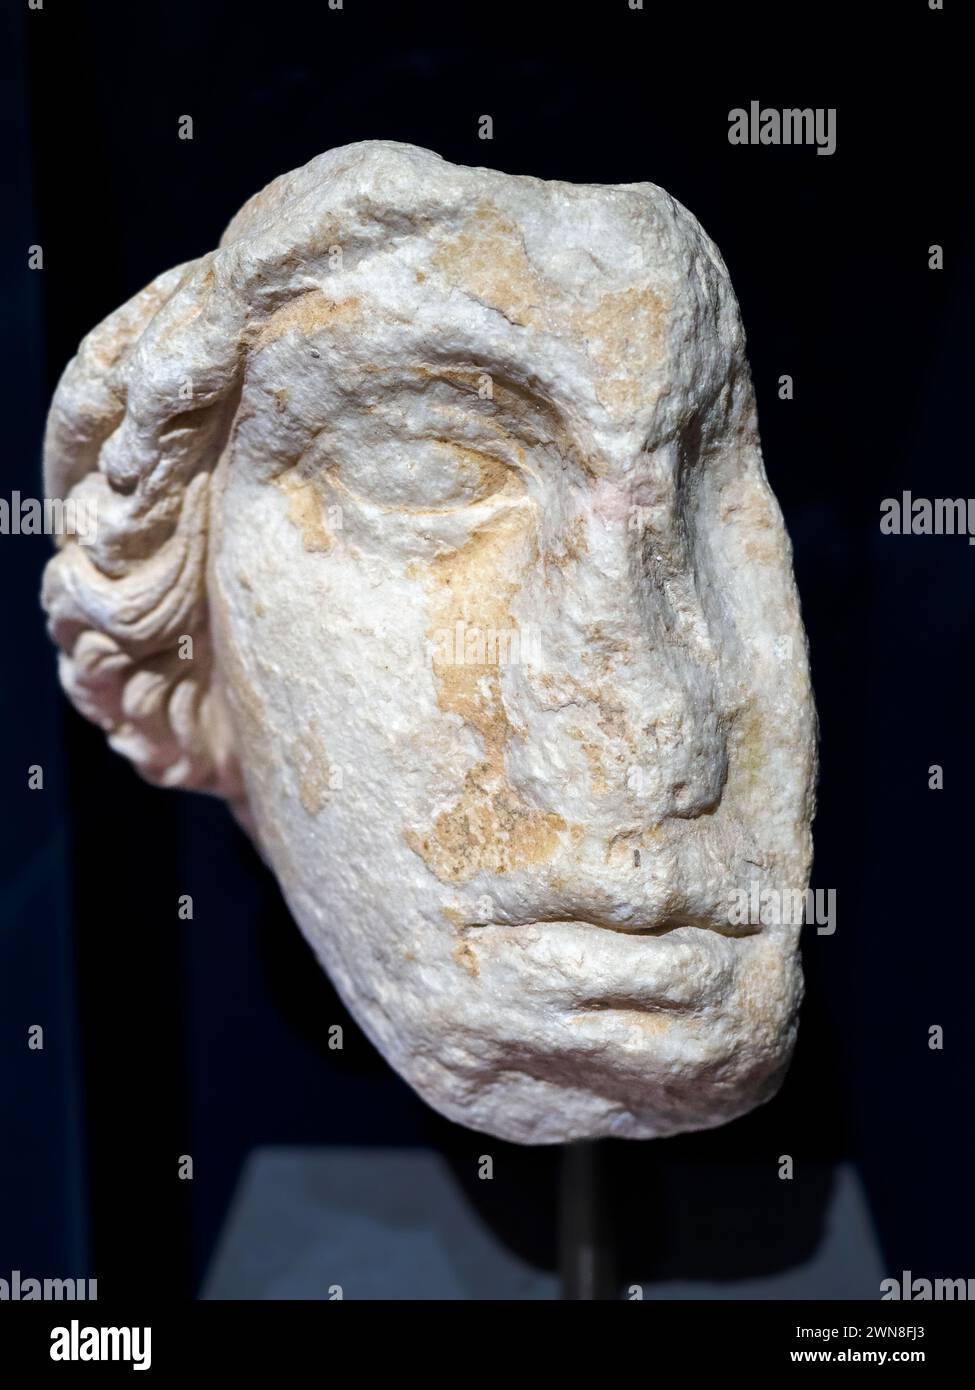 Tête d'Athéna du donarium des Athéniens à Delphes - marbre de Parian 2ème siècle après JC - Musée de l'Acropole, Athènes, Grèce Banque D'Images